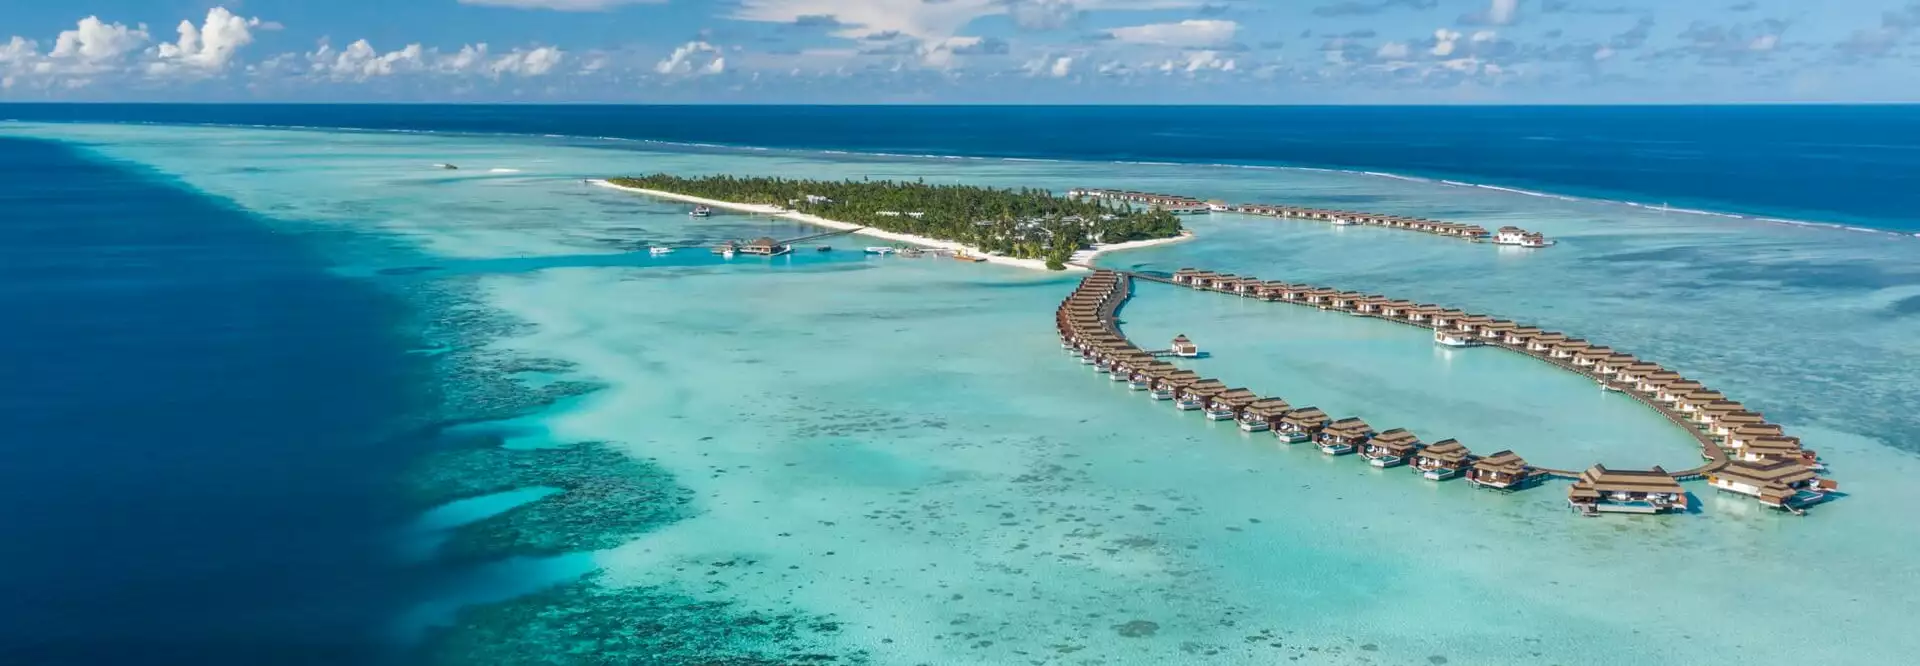 Pullman-Maldives---Aerial-View.jpg